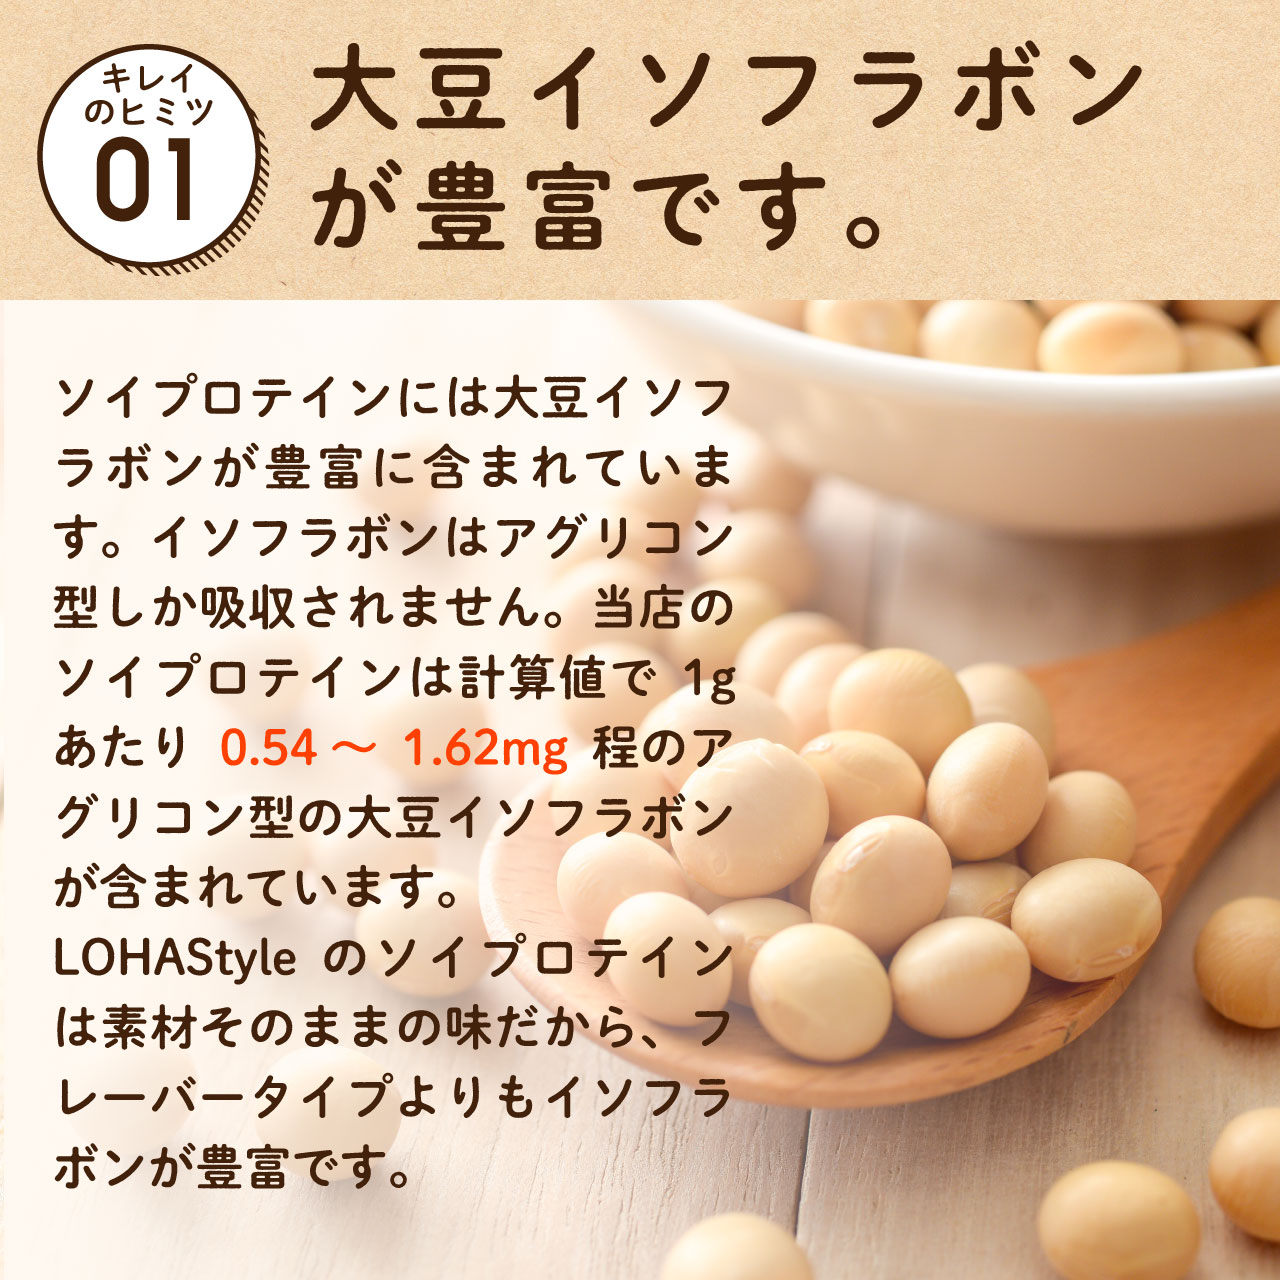 ソイプロテイン 10kg (1kg×10袋) 大豆 プロテイン プレーン 大豆 